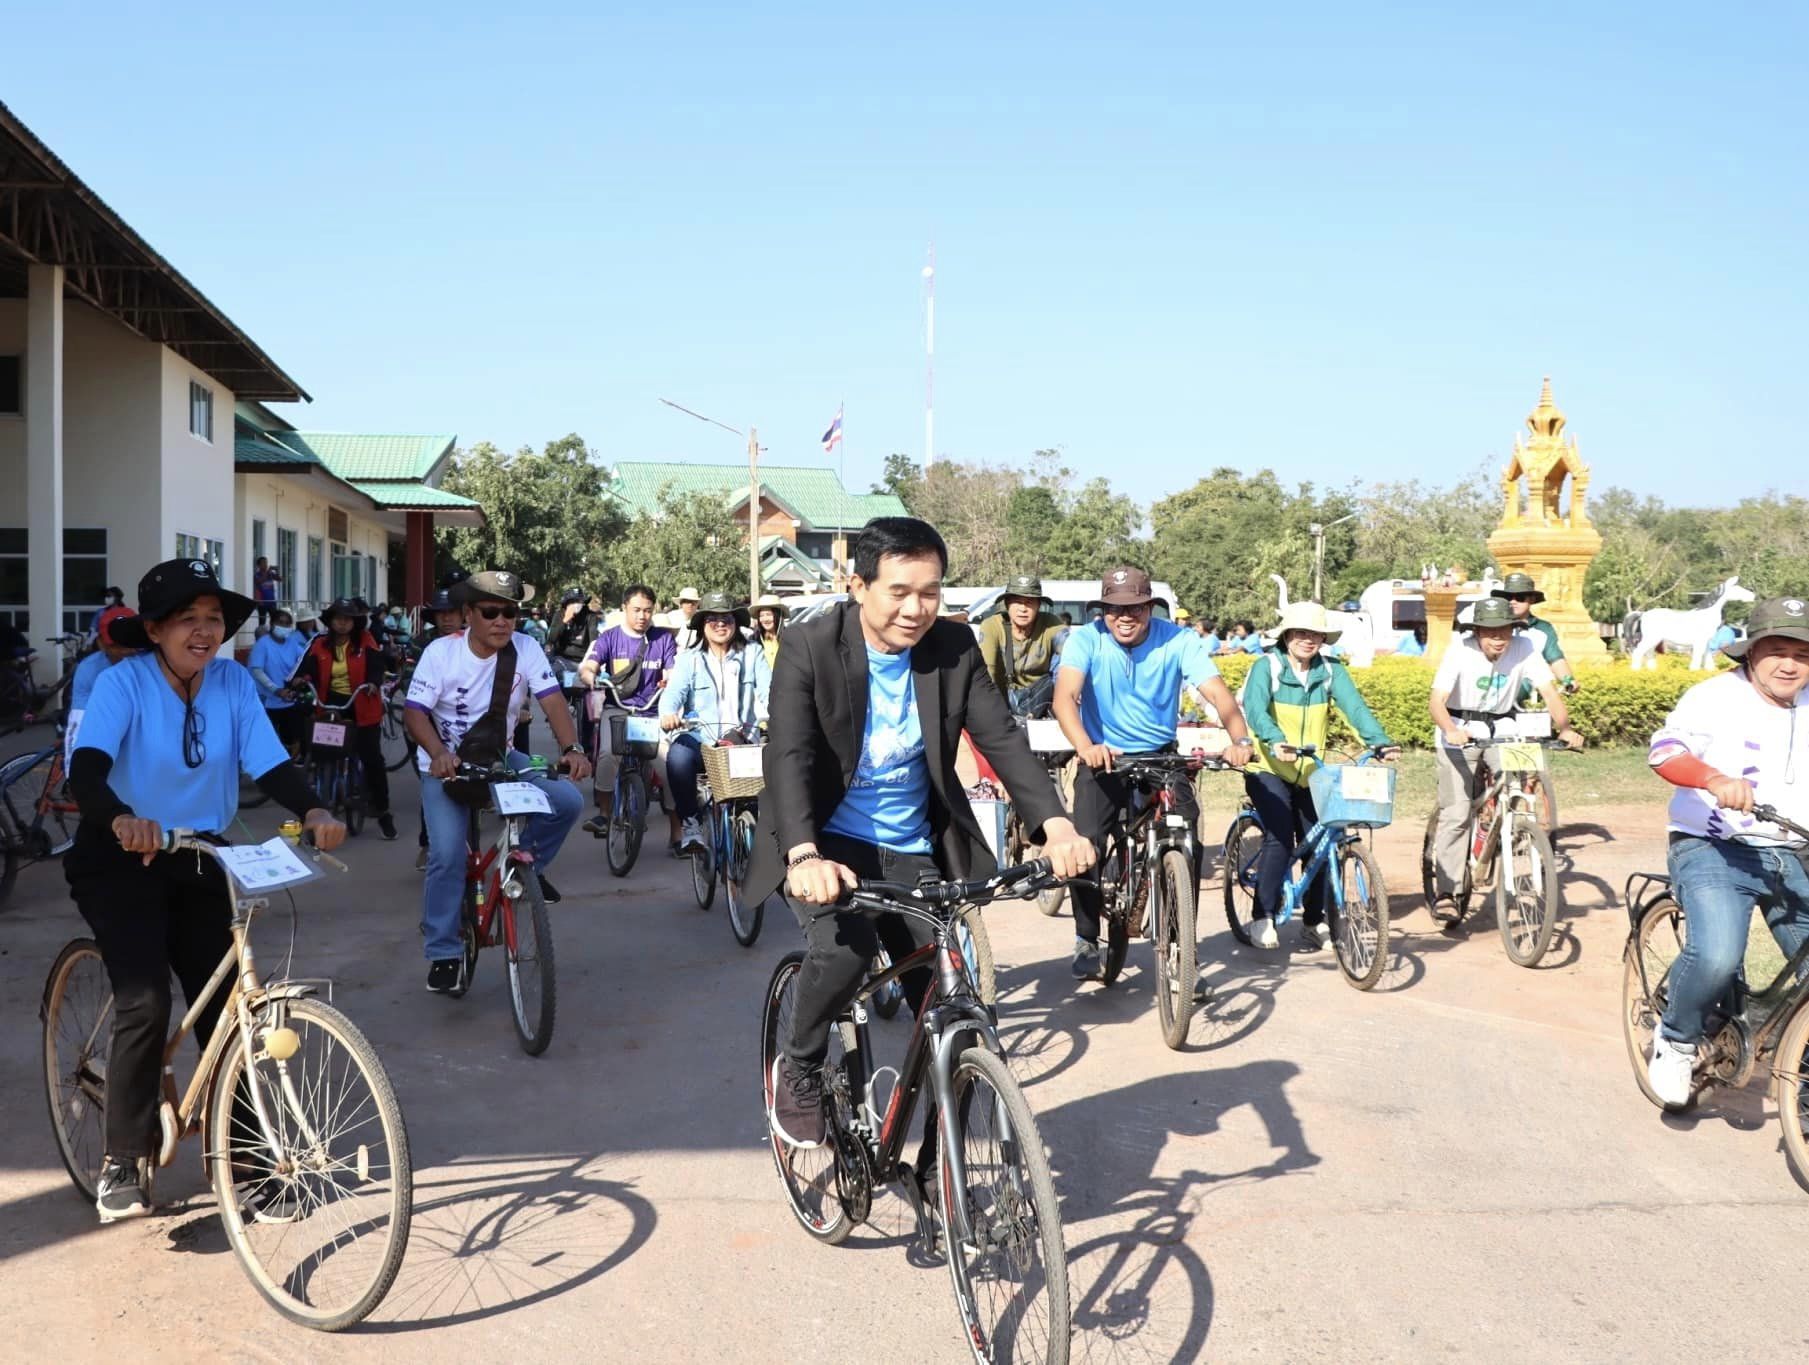 โครงการส่งเสริมการใช้จักรยานในชุมชน ลดมลพิษ รับมือการเปลี่ยนแปลงสภาพภูมิอากาศ (Cycling Community Free Air Pollution) ร่วมกิจกรรมปั่นจักรยาน “ ปั่นกันให้ลั่นโนน(ไทย)